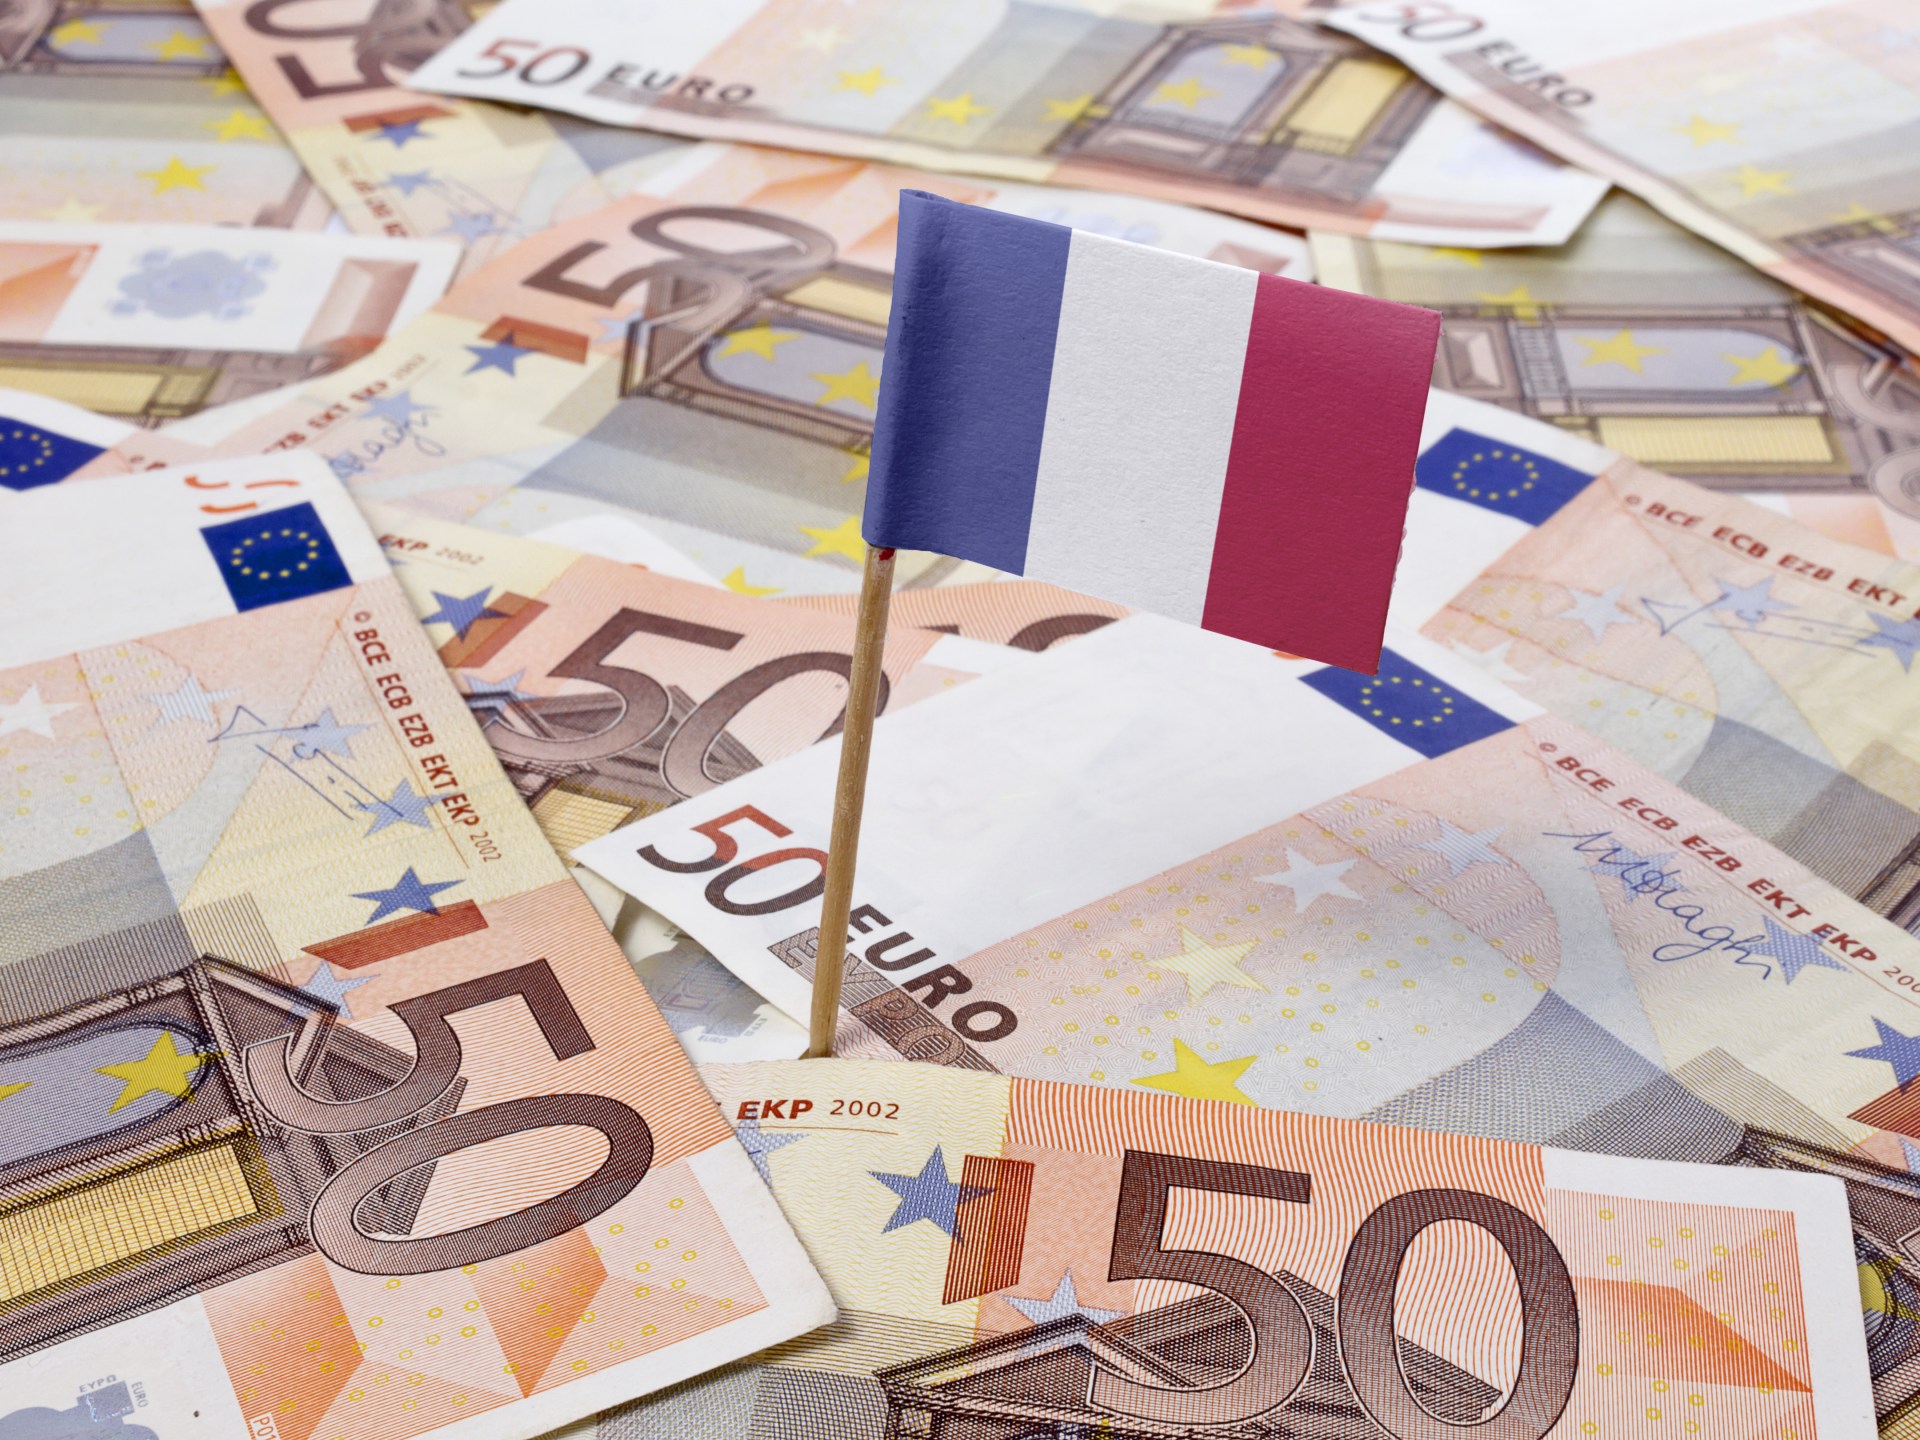 معضلة الديون في فرنسا.. وكالات التصنيف قلقة ونظرتها سلبية | اقتصاد – البوكس نيوز